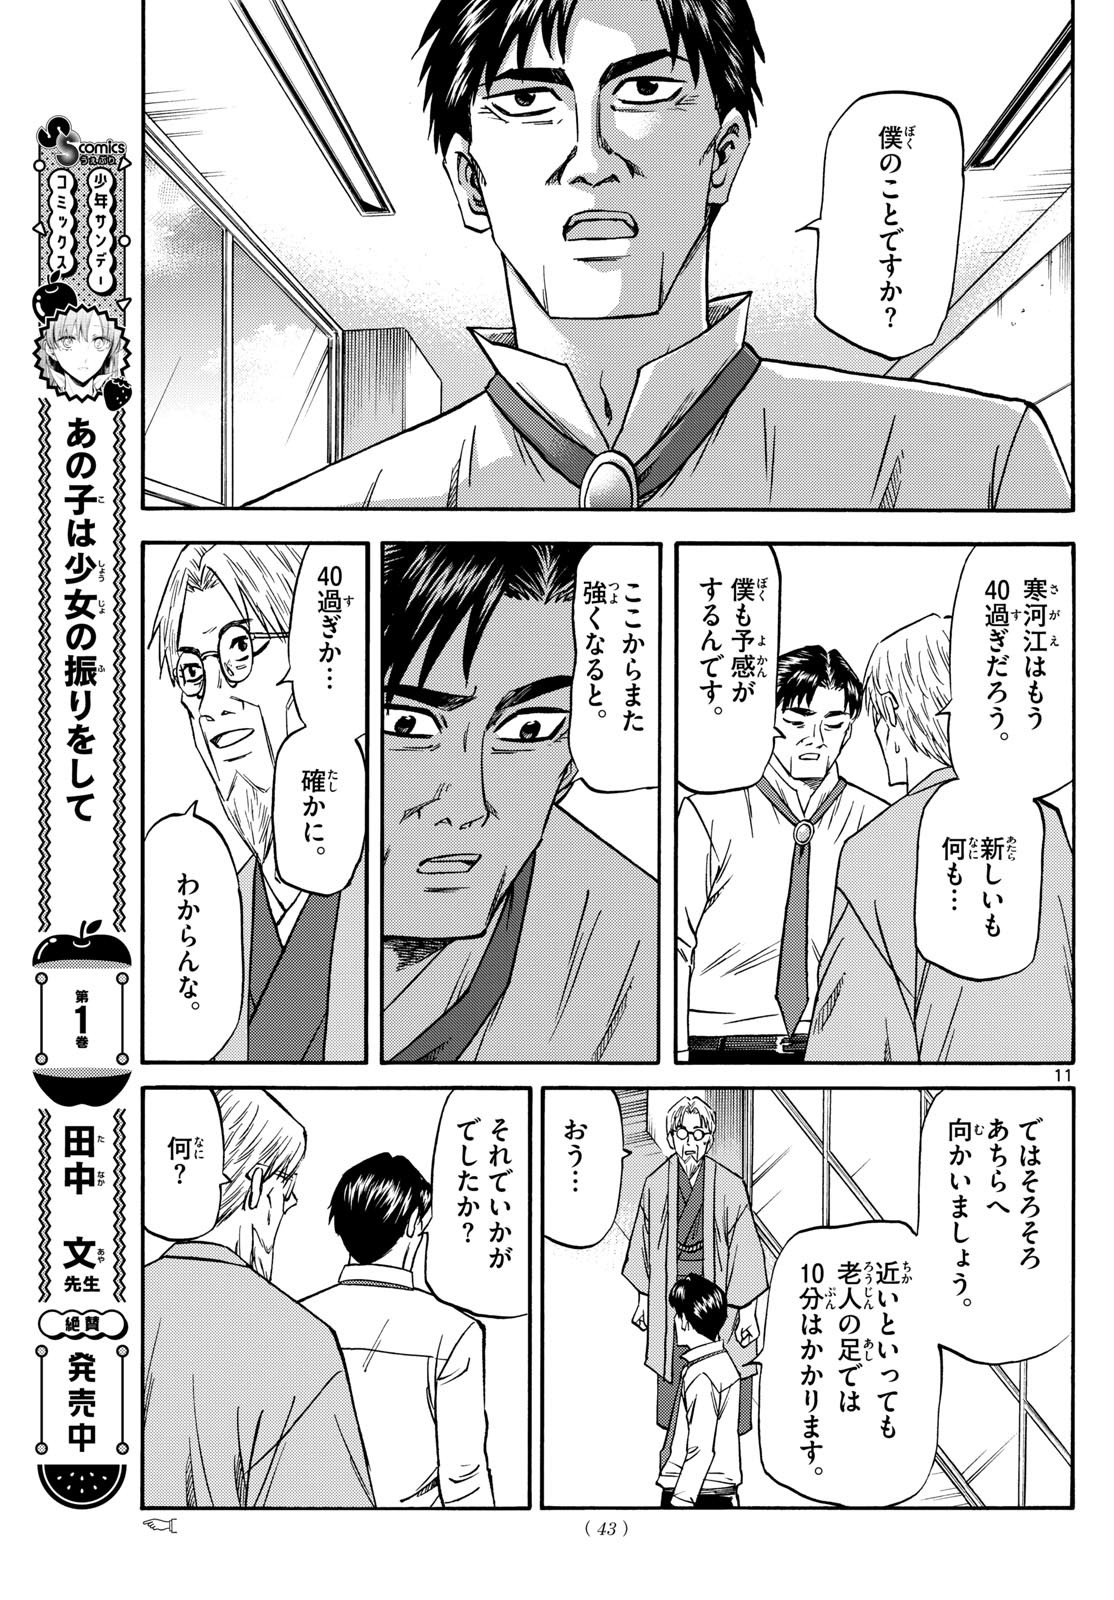 Ryu-to-Ichigo - Chapter 181 - Page 11